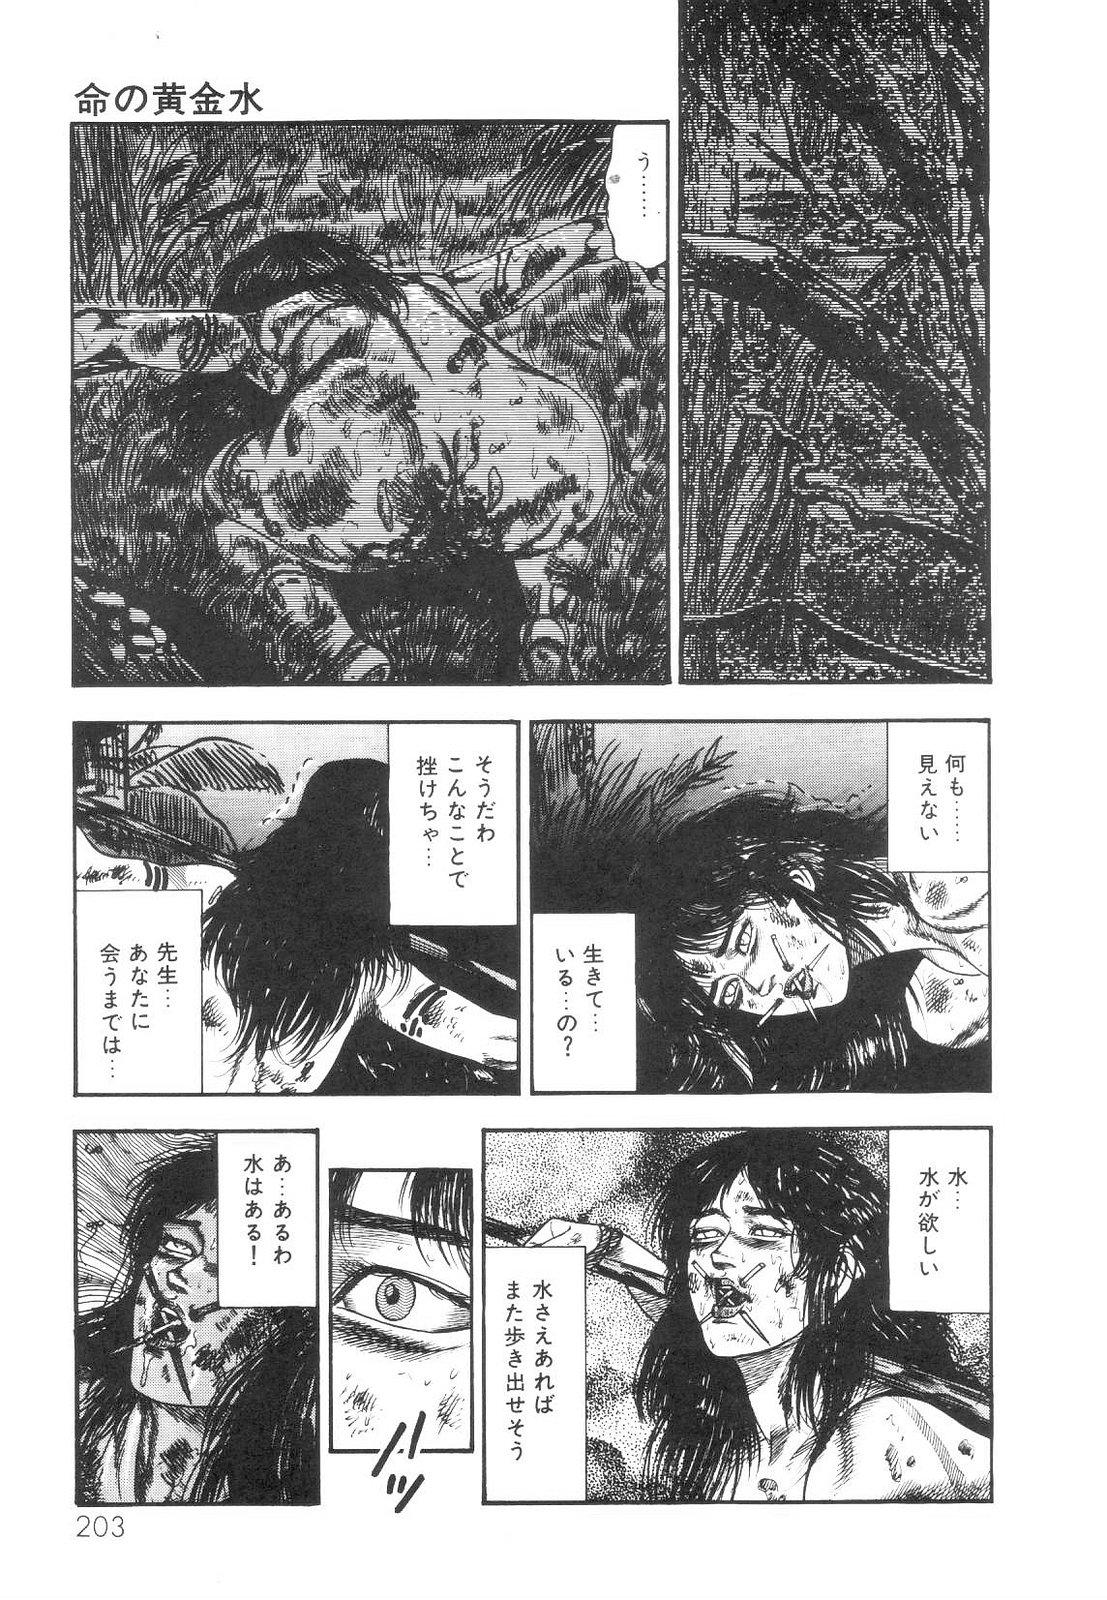 Shiro no Mokushiroku Vol. 1 - Sei Shojo Shion no Shou 203